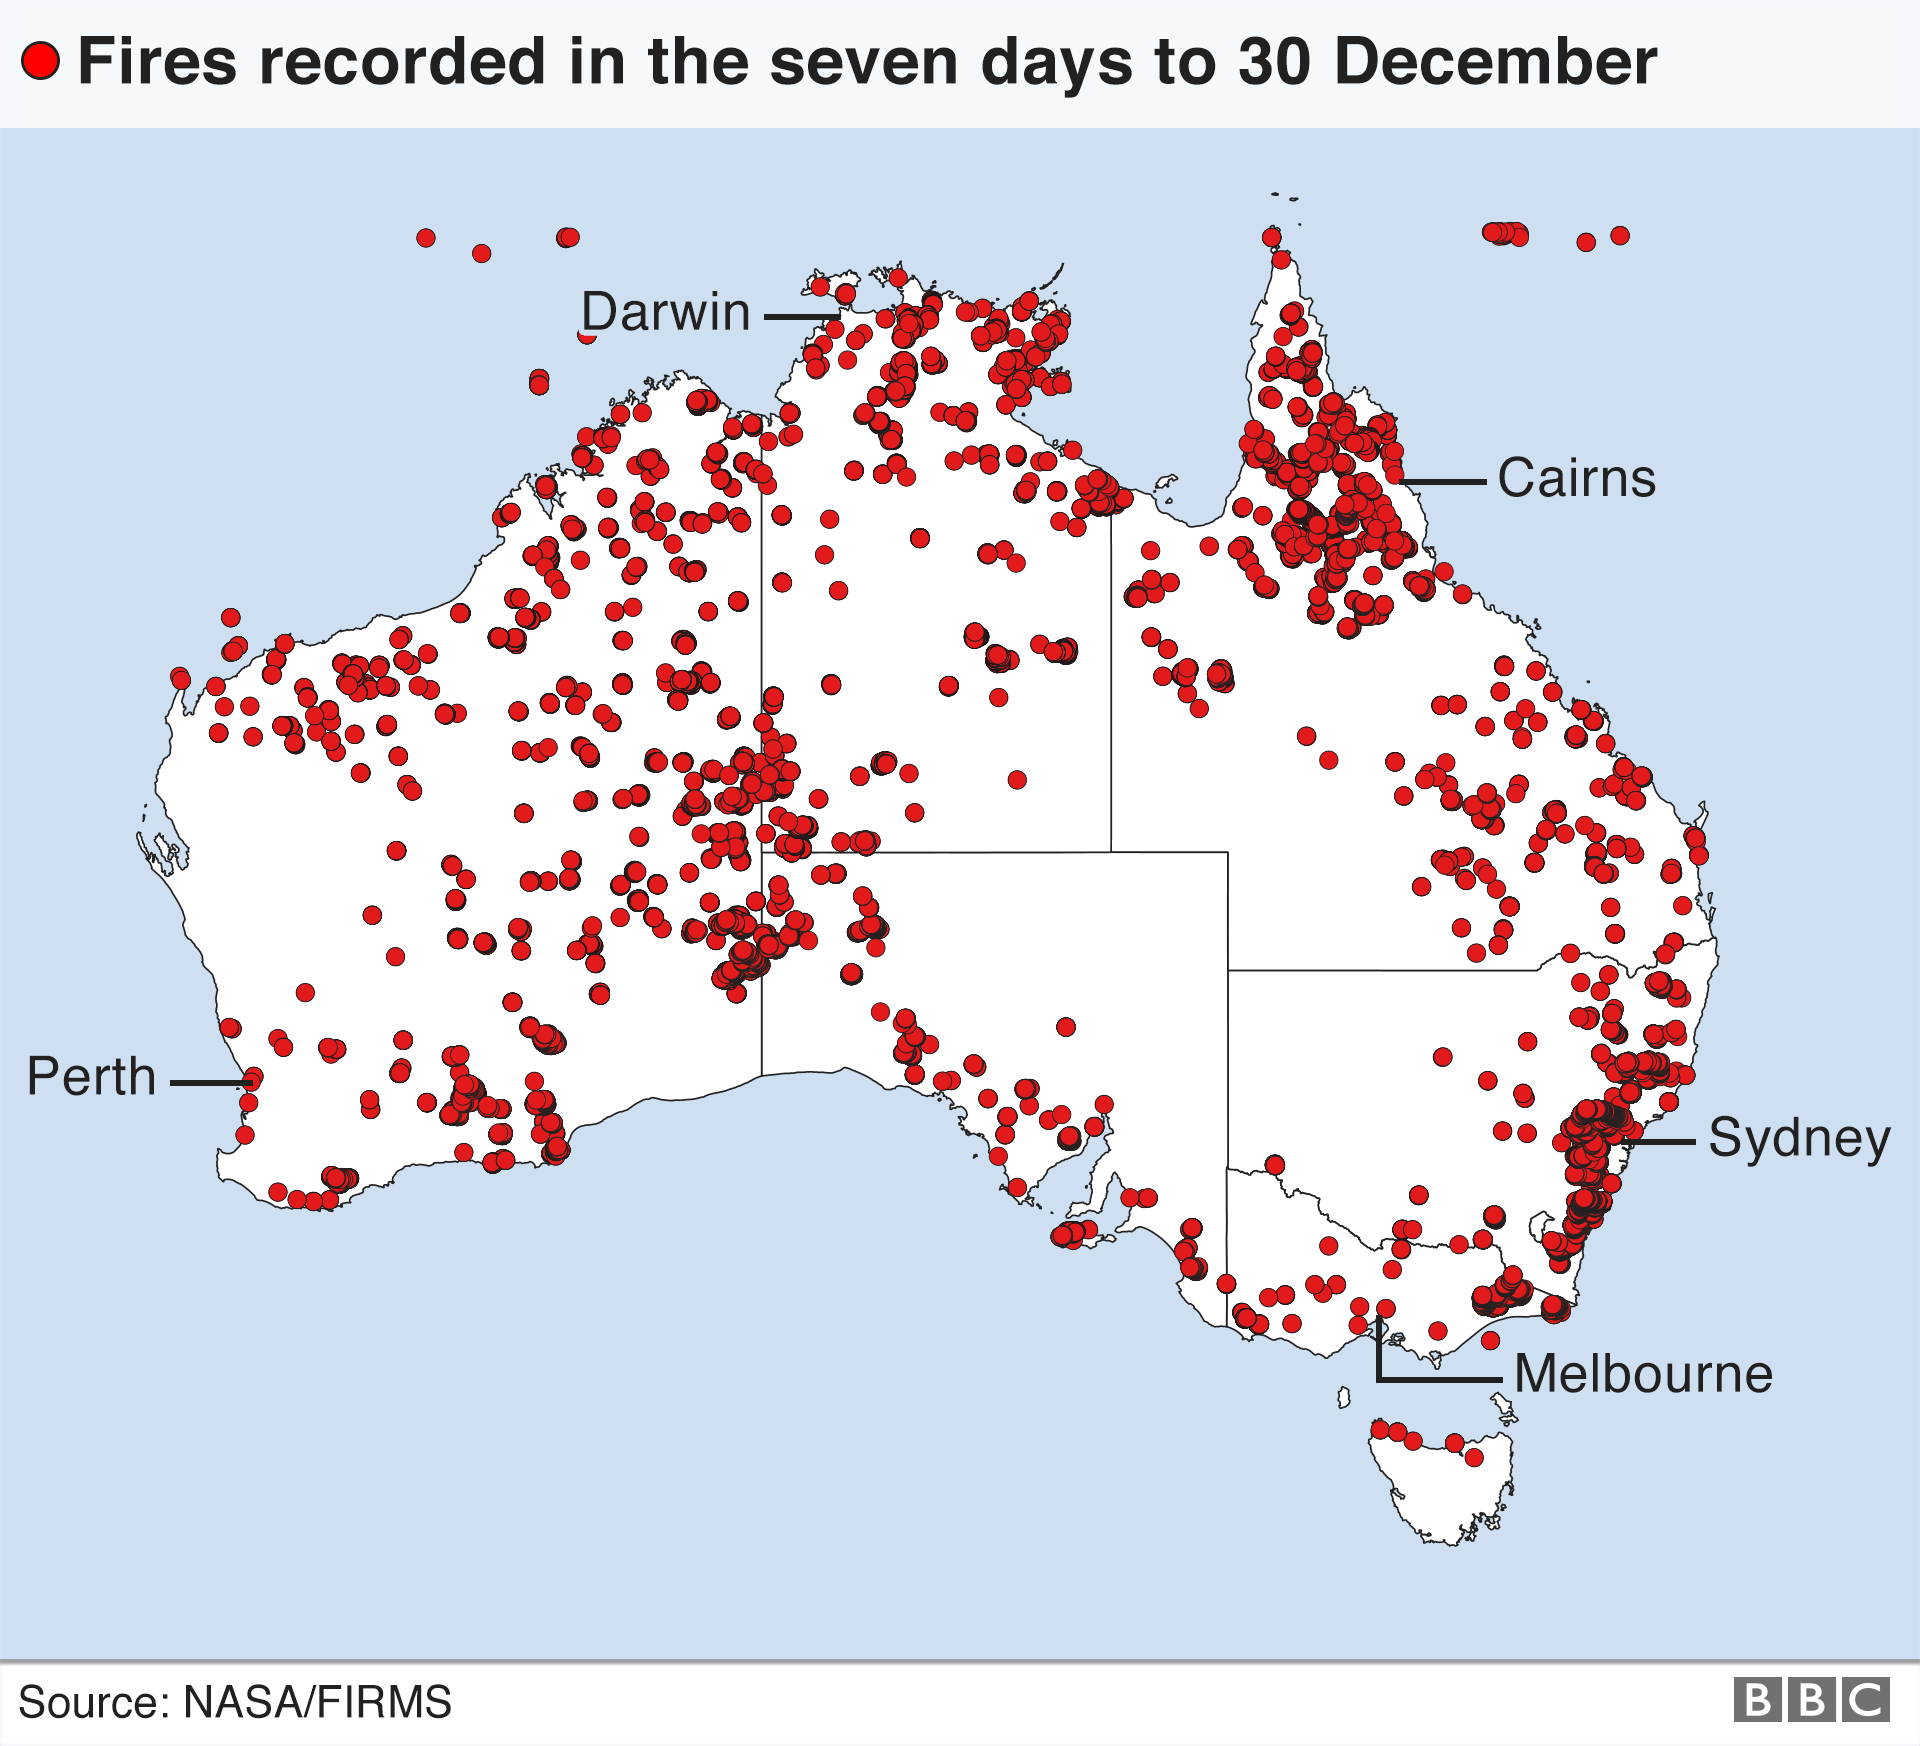 Карта пожаров в Австралии